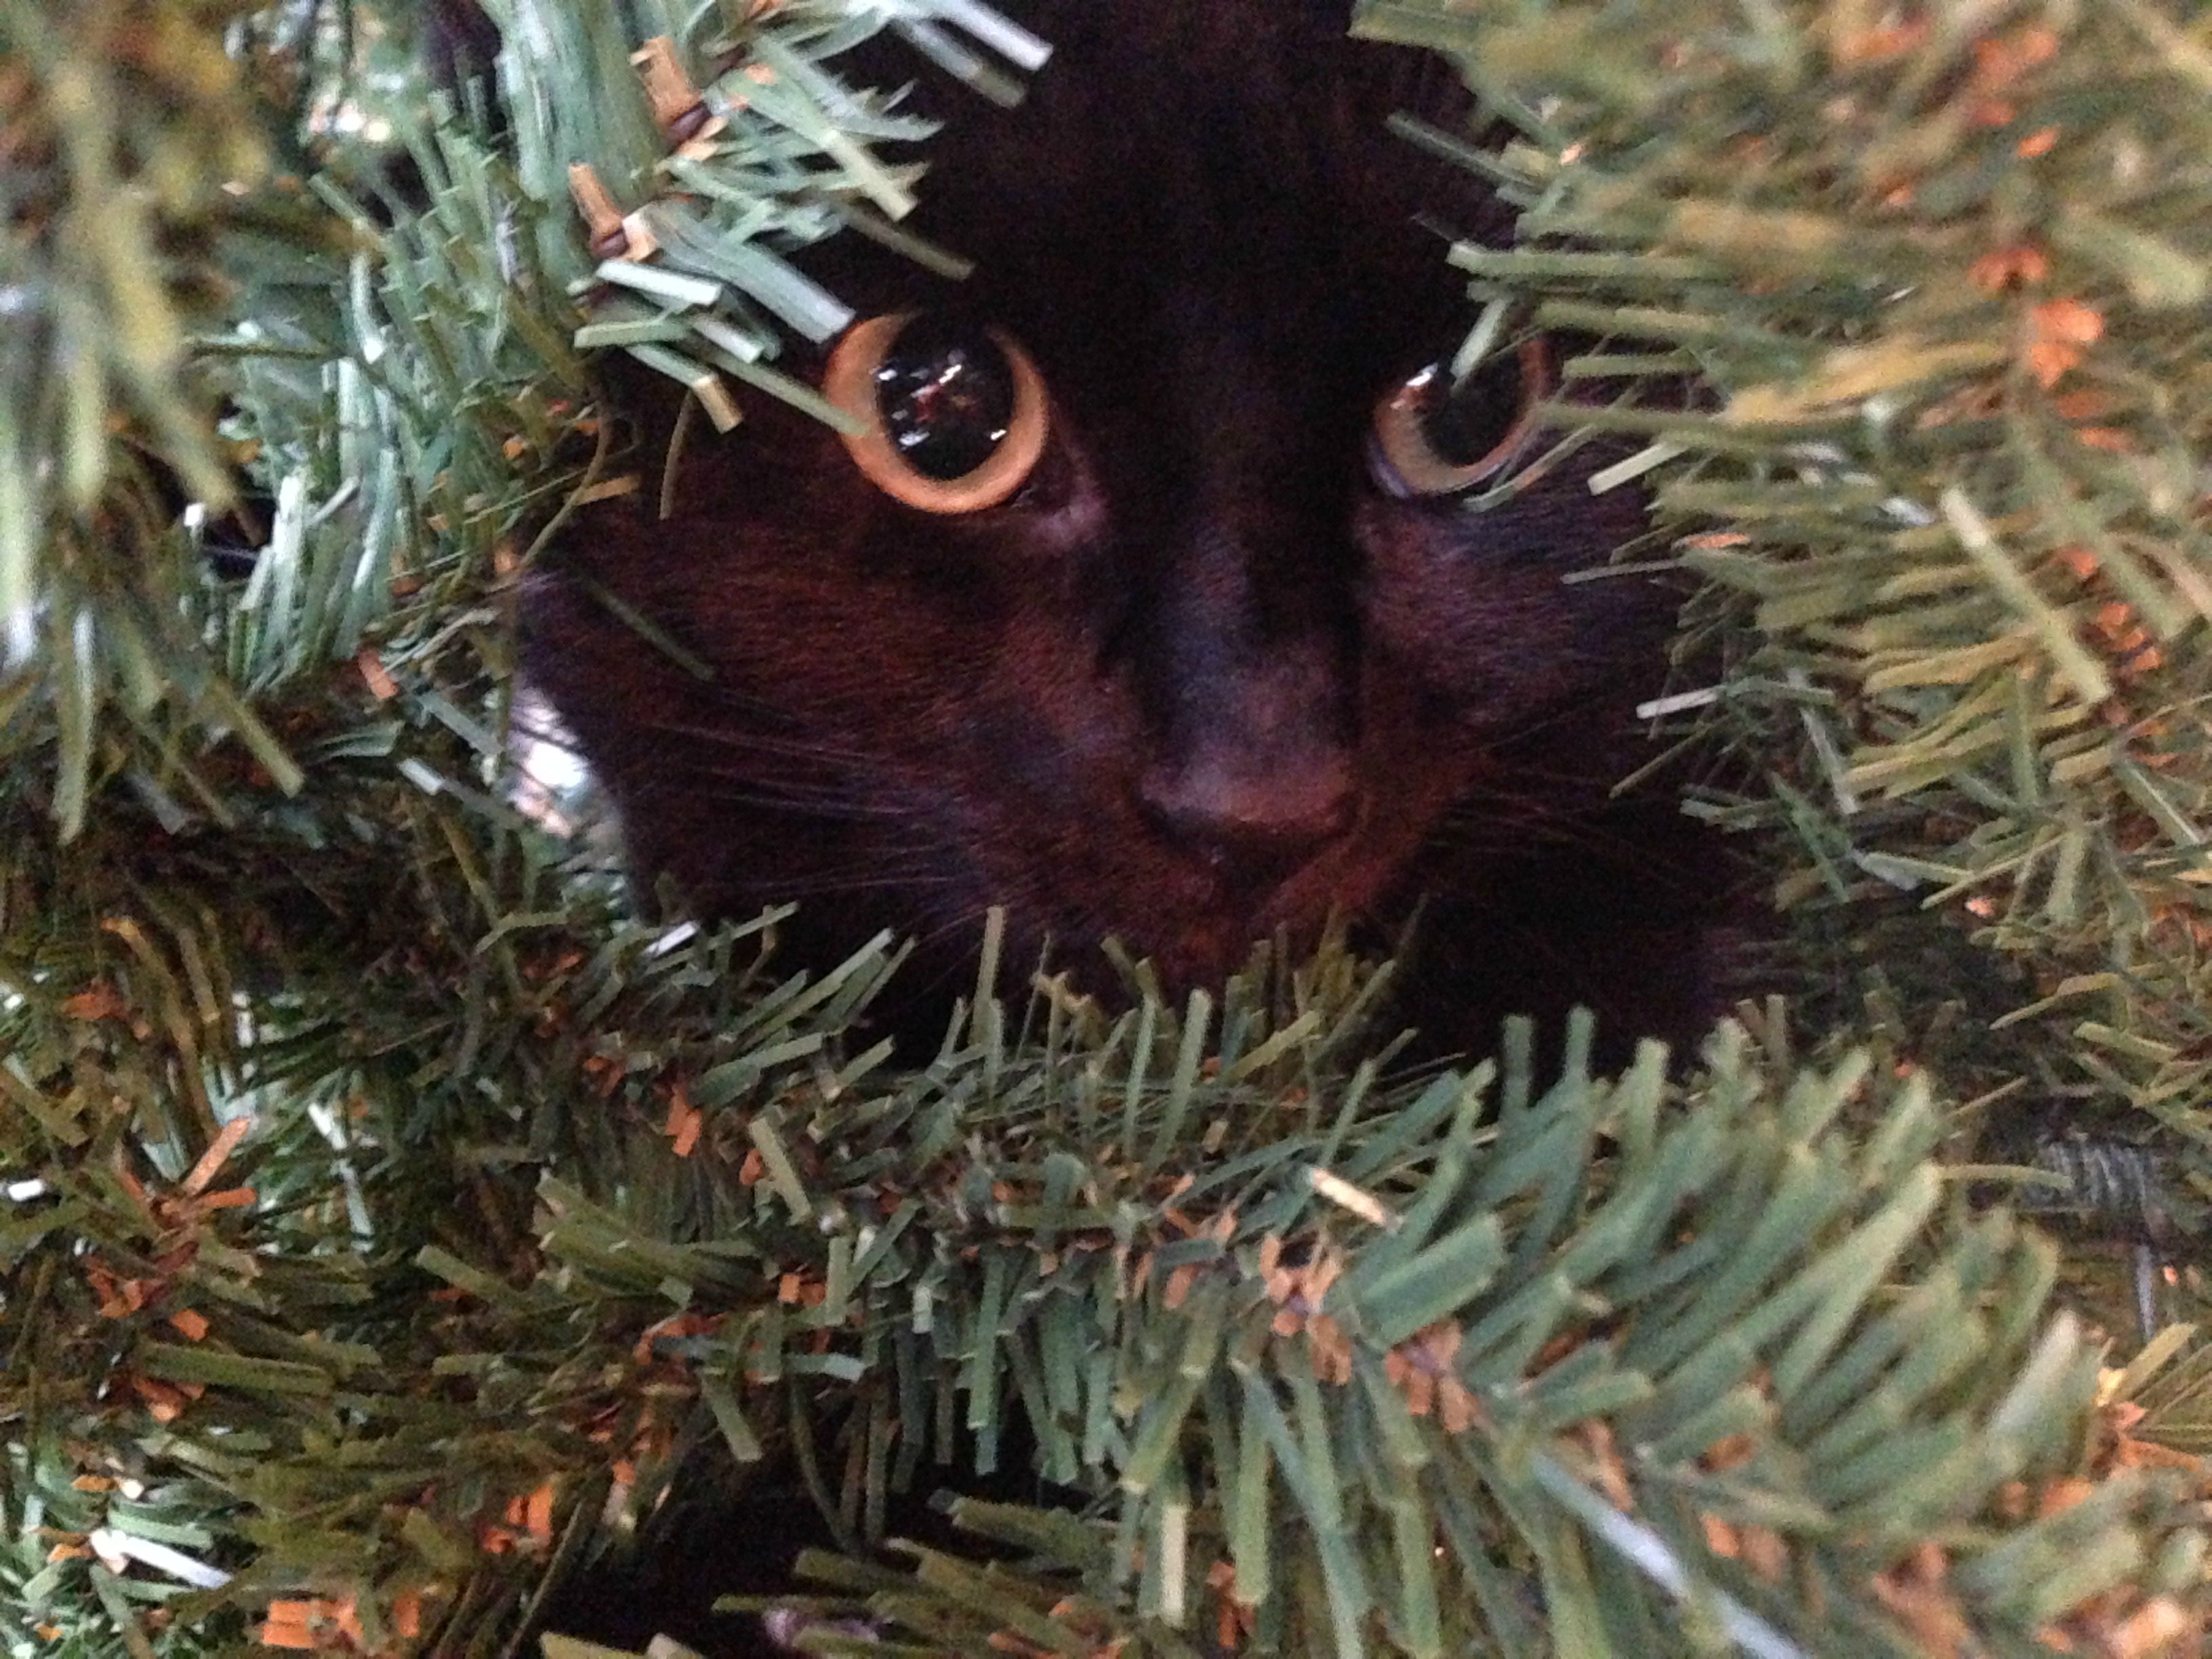 Katze im Weihnachtsbaum